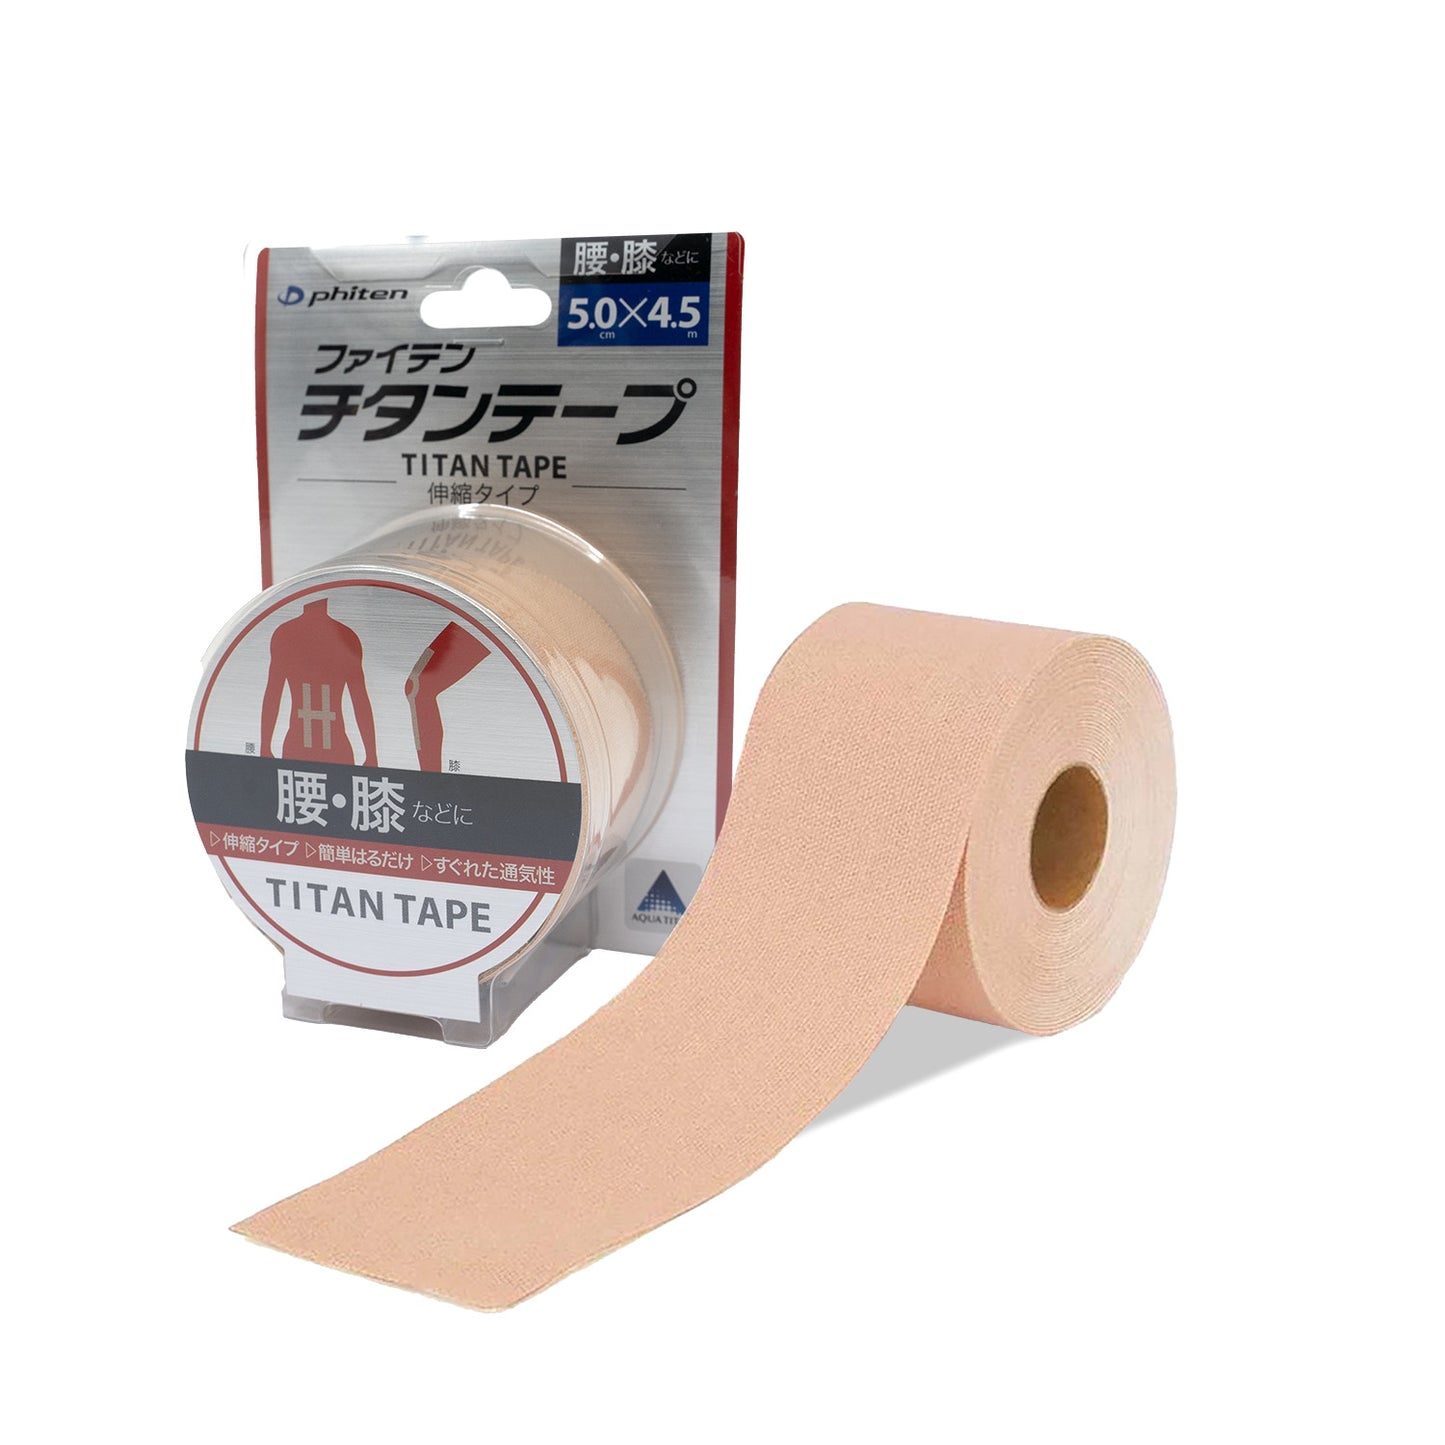 Phiten Aquatitan elastic tape